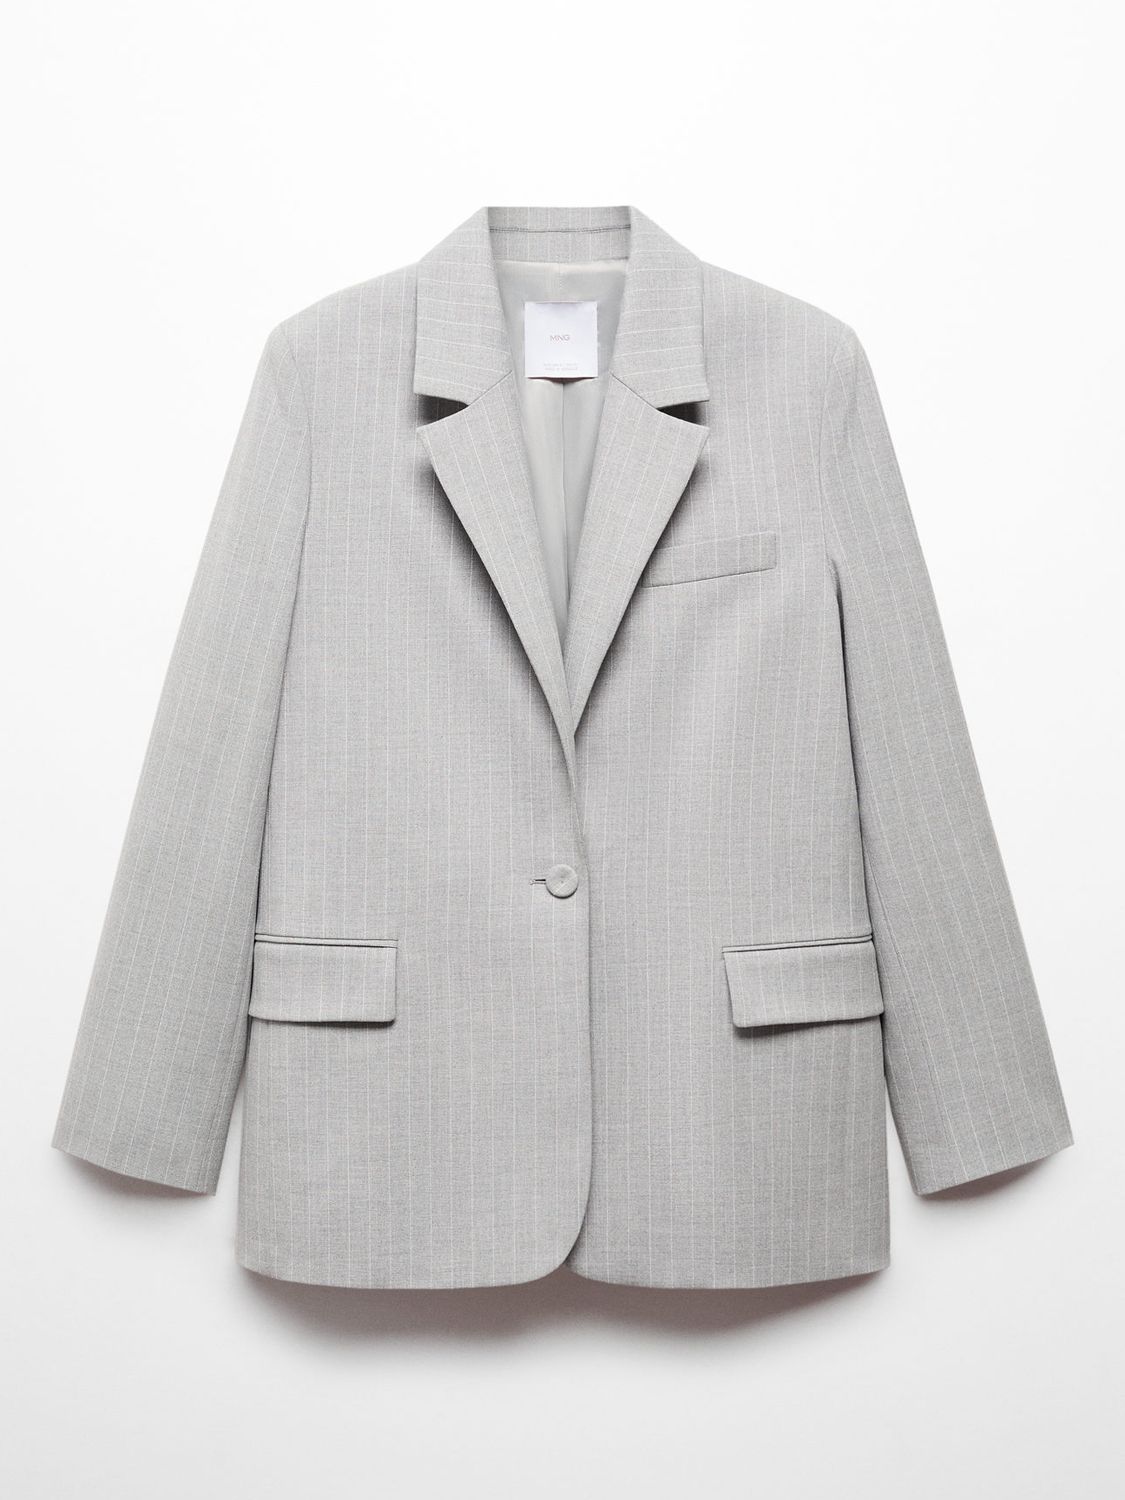 Mango Rayita Pinstripe Suit Blazer, Grey, XXXXXL